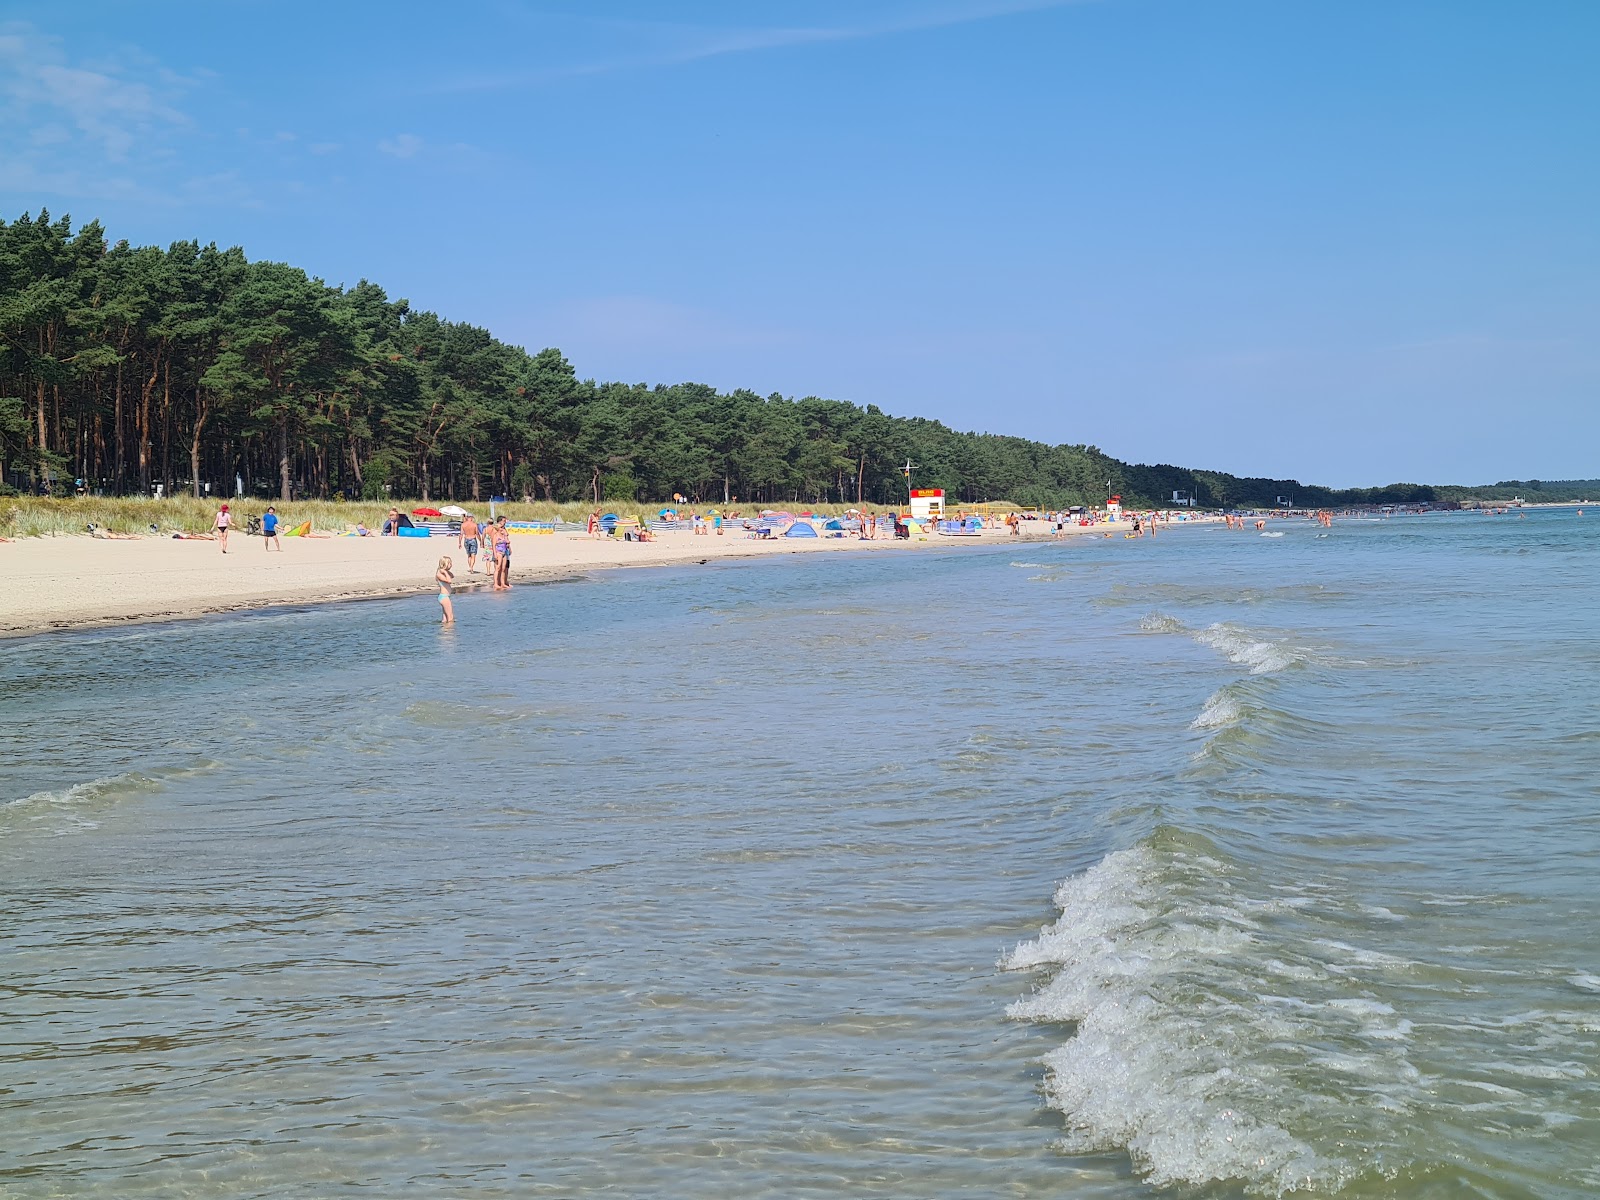 Zdjęcie Plaża Binzer z przestronna plaża